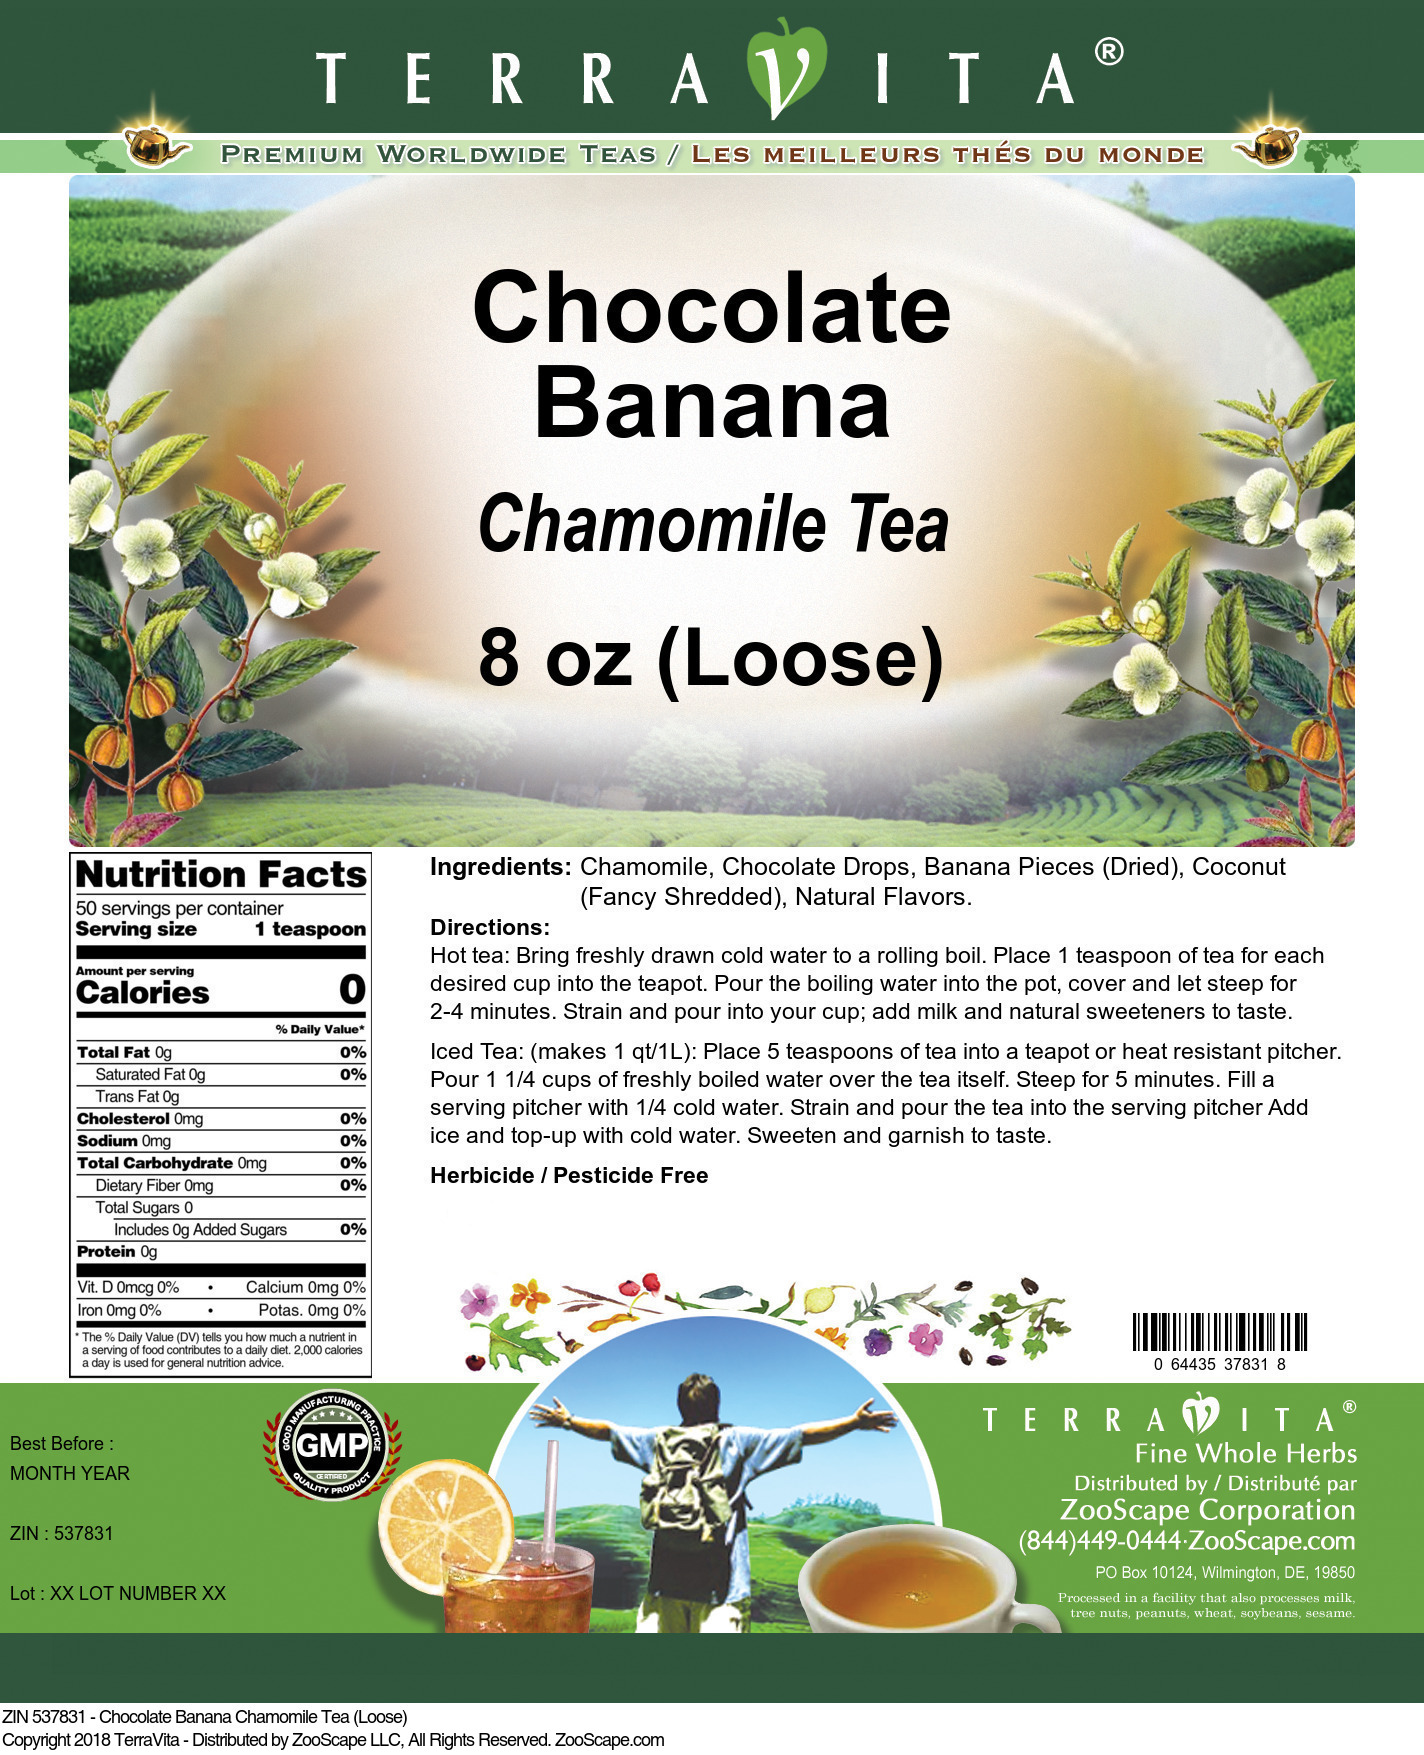 Chocolate Banana Chamomile Tea (Loose) - Label